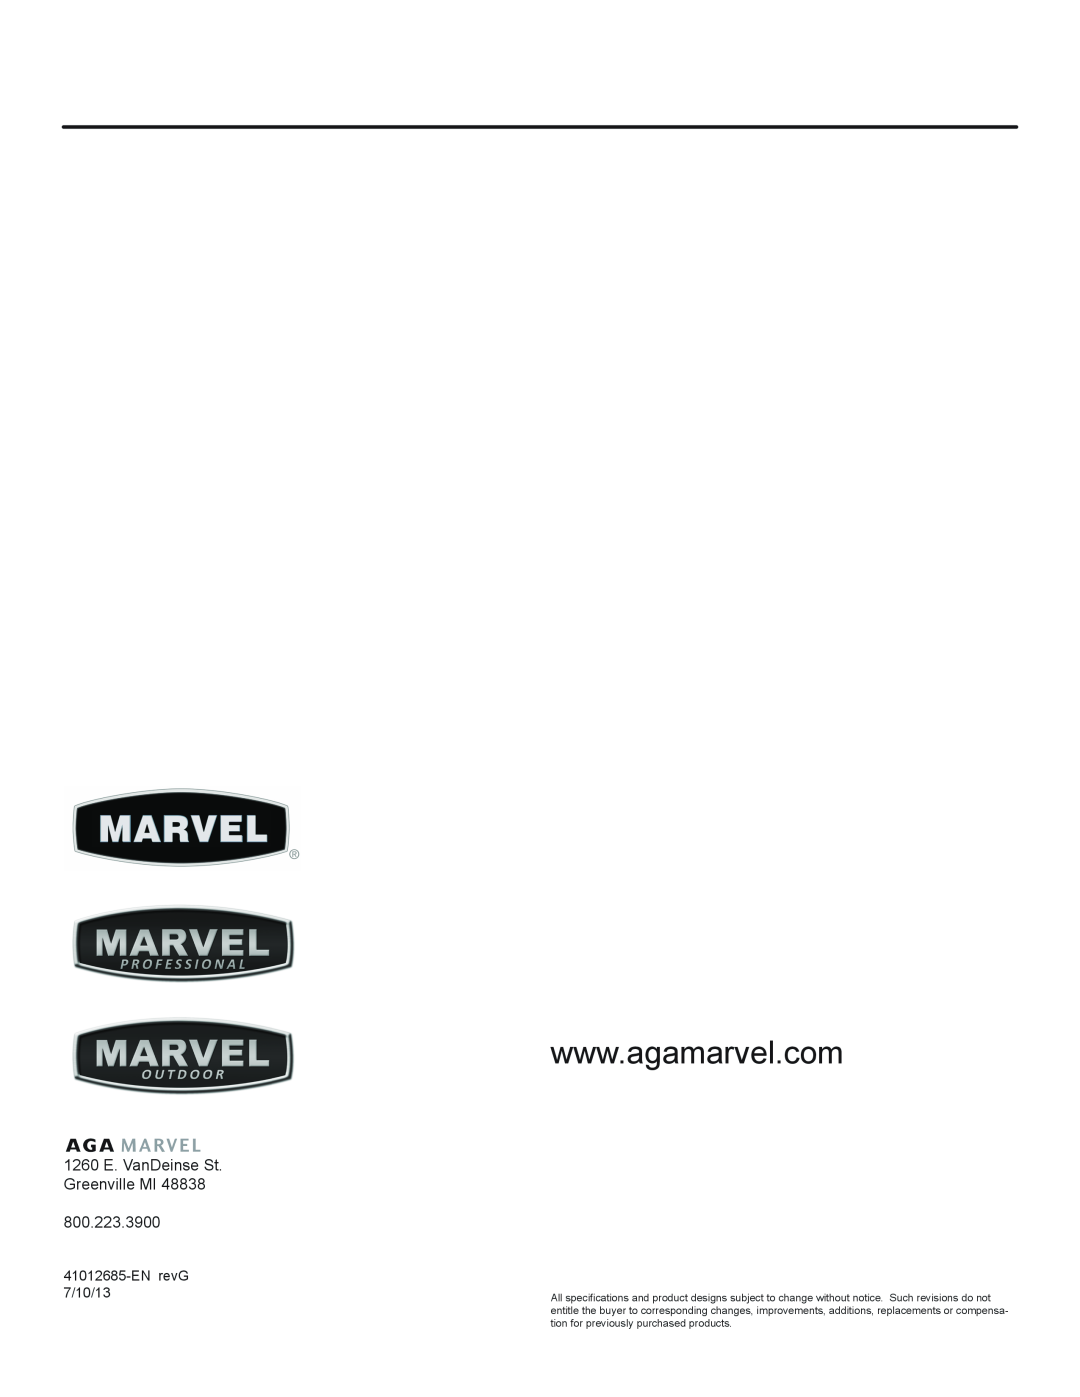 Marvel Industries 61ARMBBOL manual 1260 E. VanDeinse St. Greenville MI, EN revG 7/10/13 